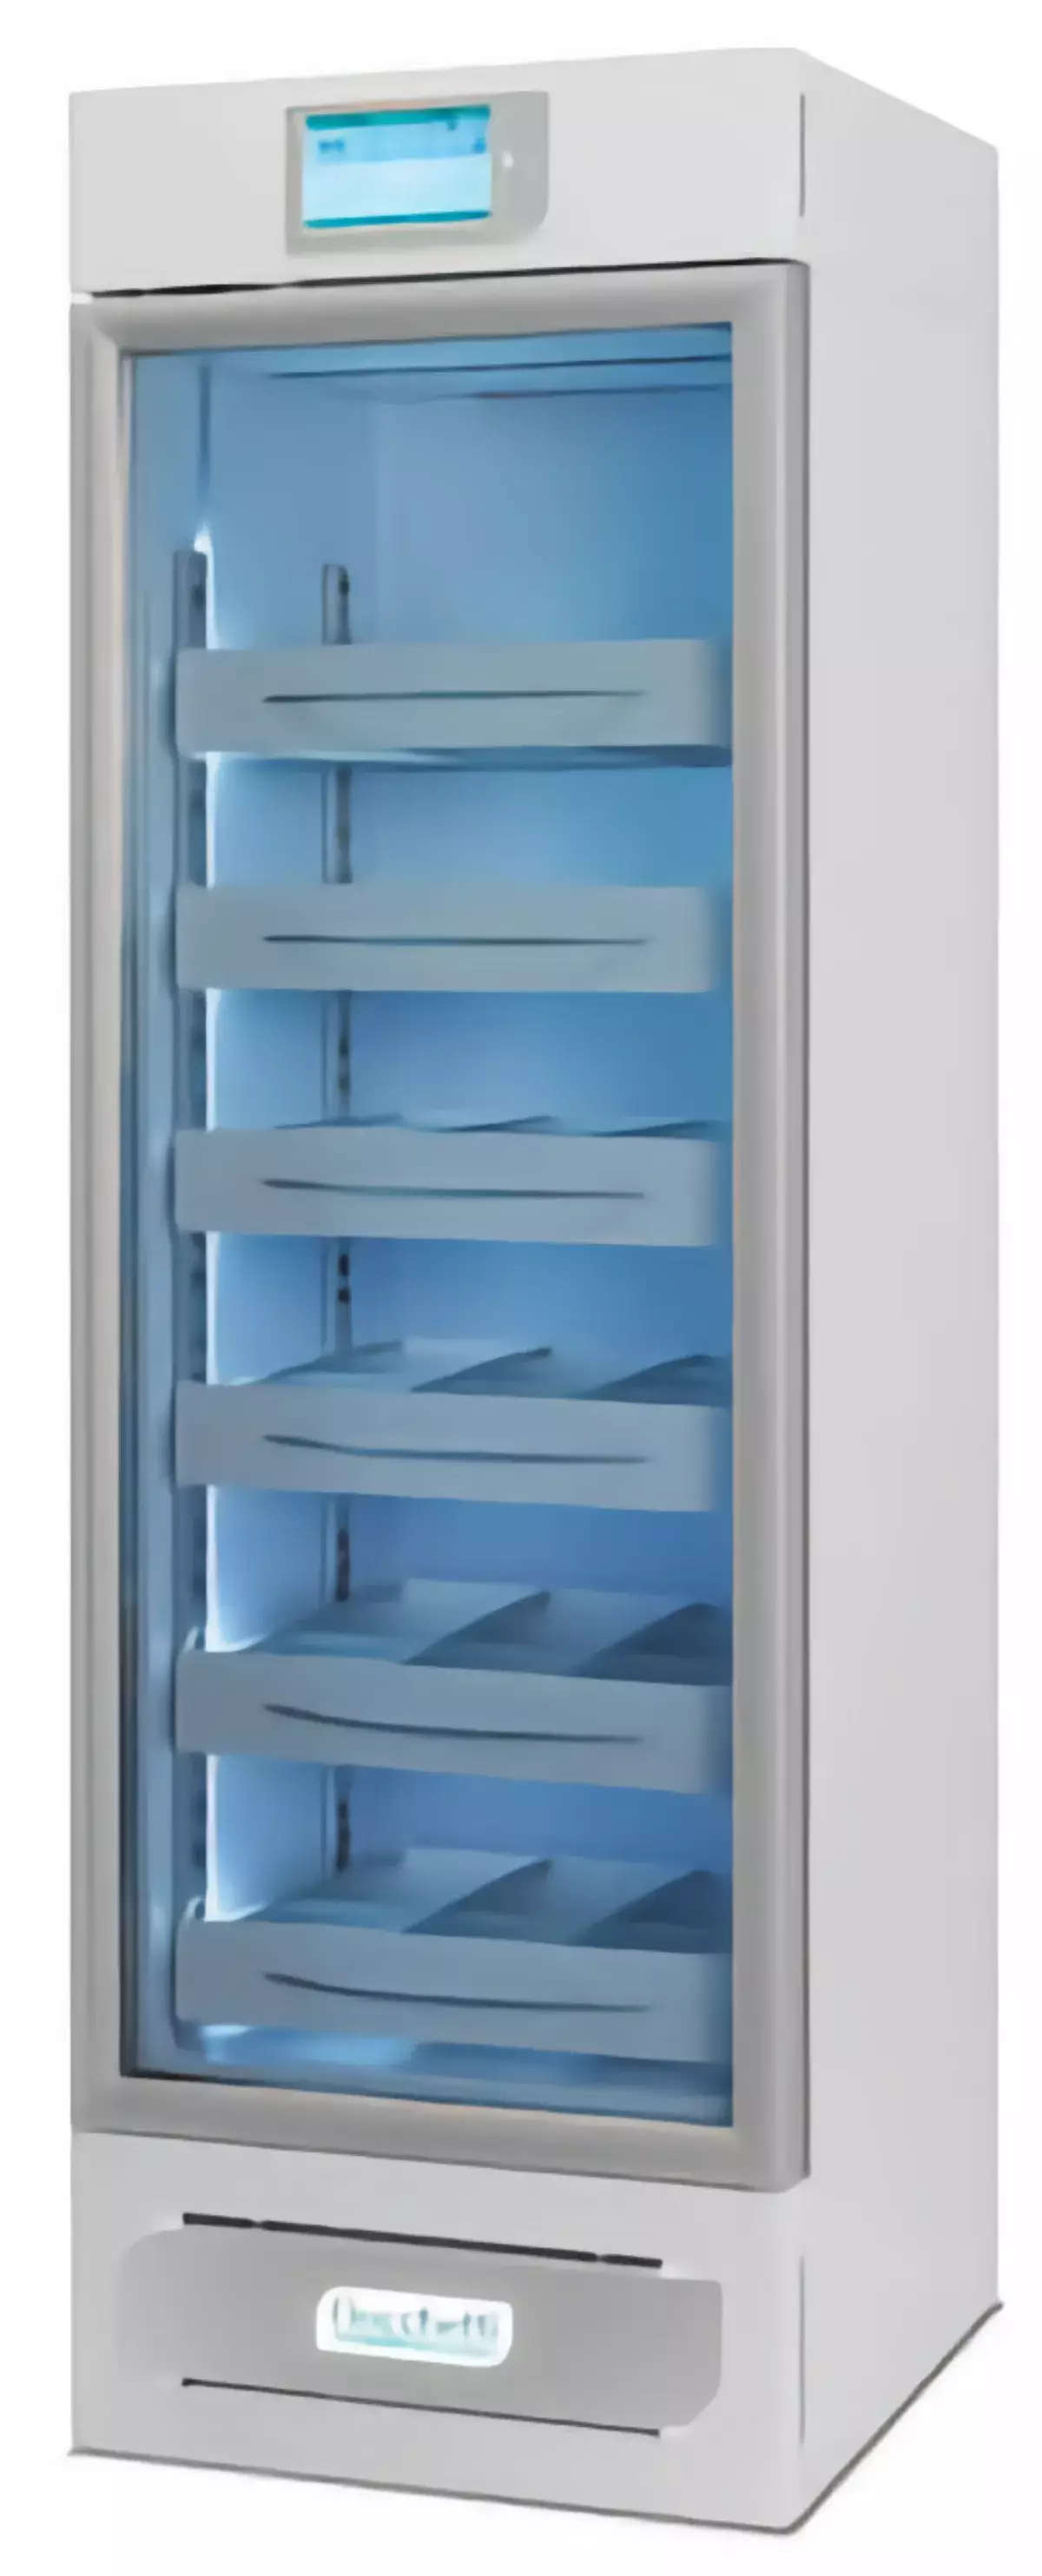 Холодильник Emoteca 400 touch, вертикальный, 347л, до 180 мешков 450мл